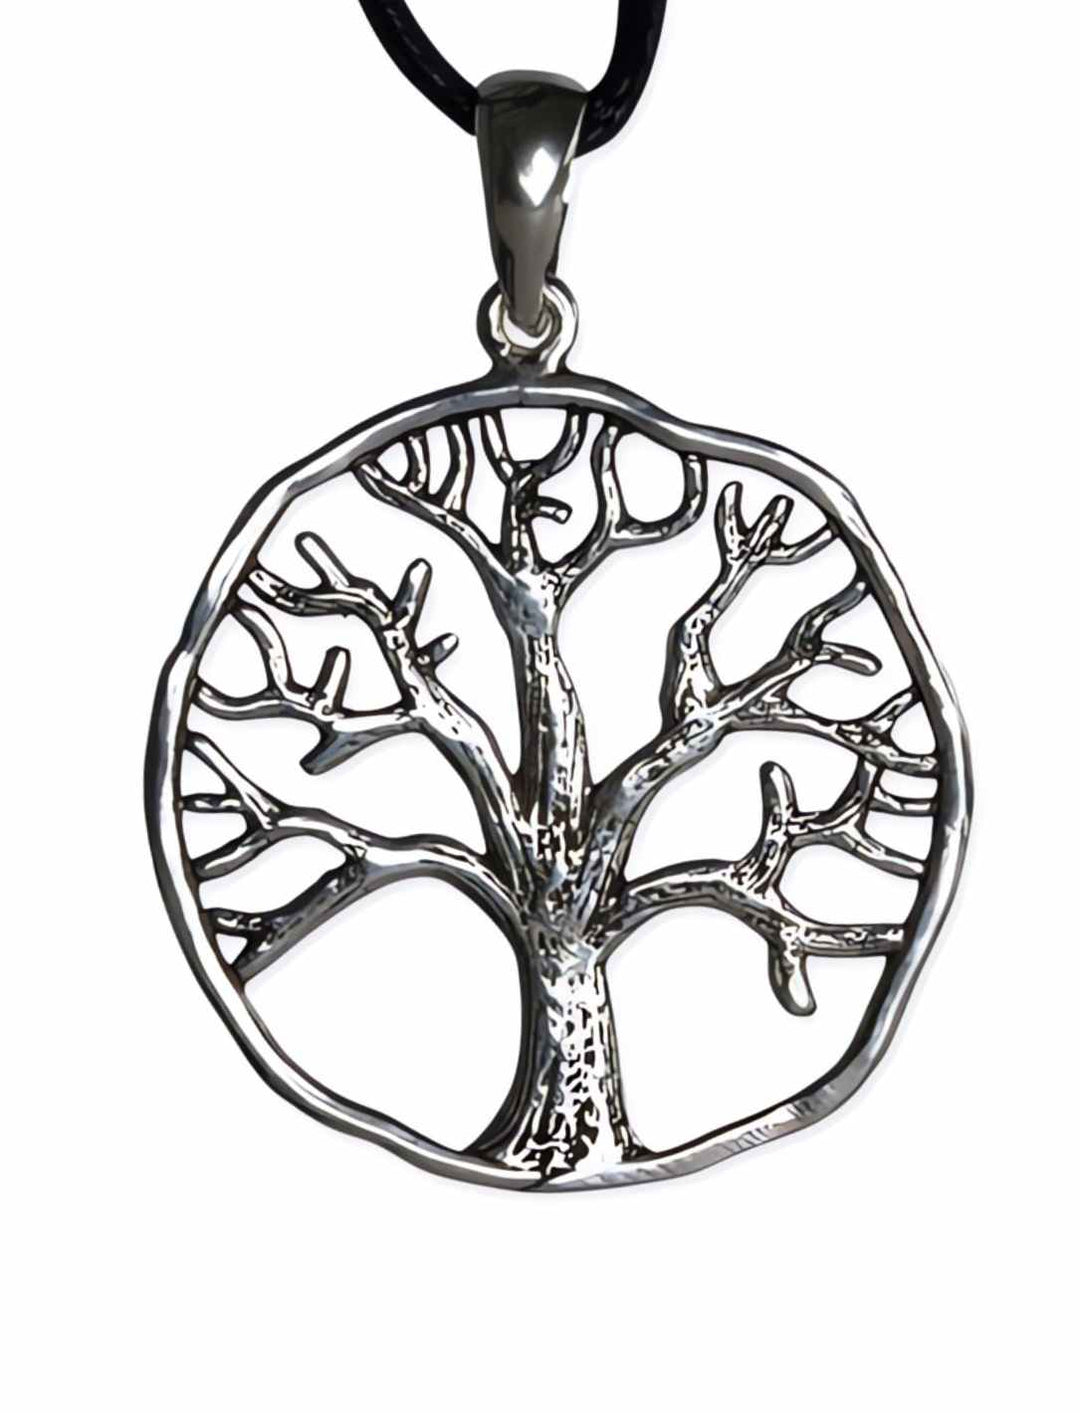 Baum des Eichenhains Anhänger aus Sterlingsilber - keltische Symbolik trifft auf modernes Design.